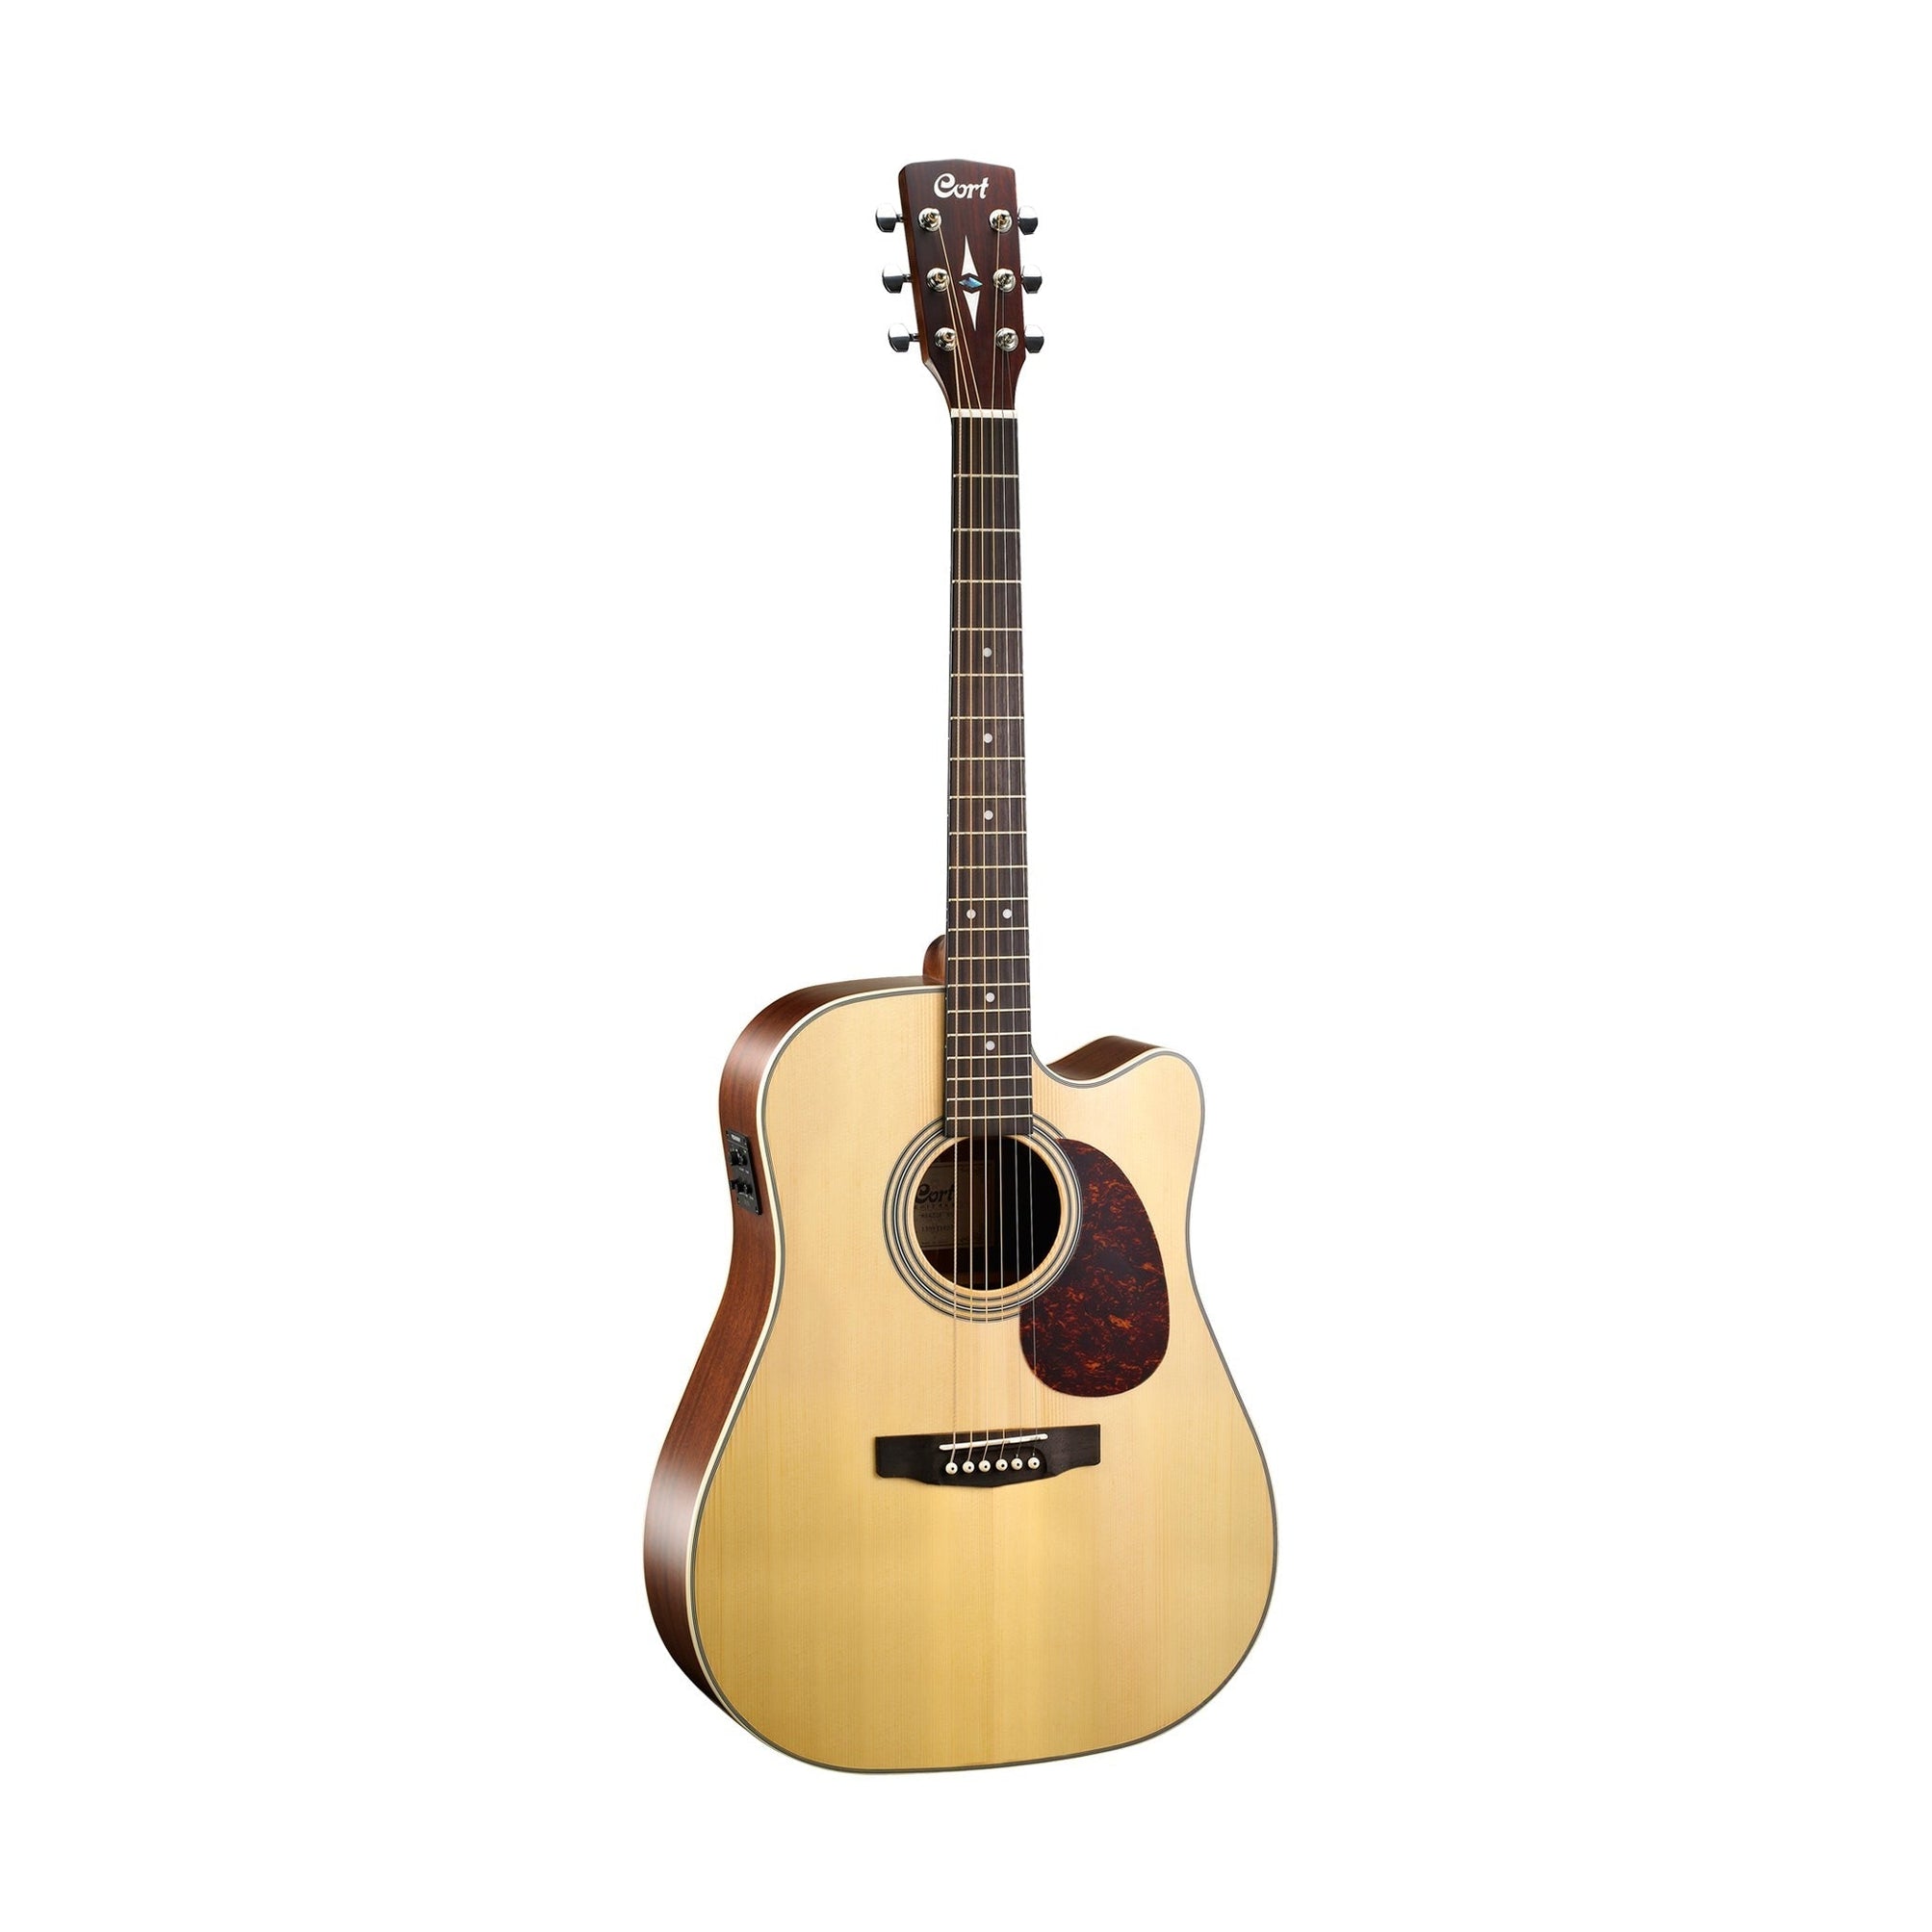 Đàn Guitar Acoustic Cort MR600F-Mai Nguyên Music